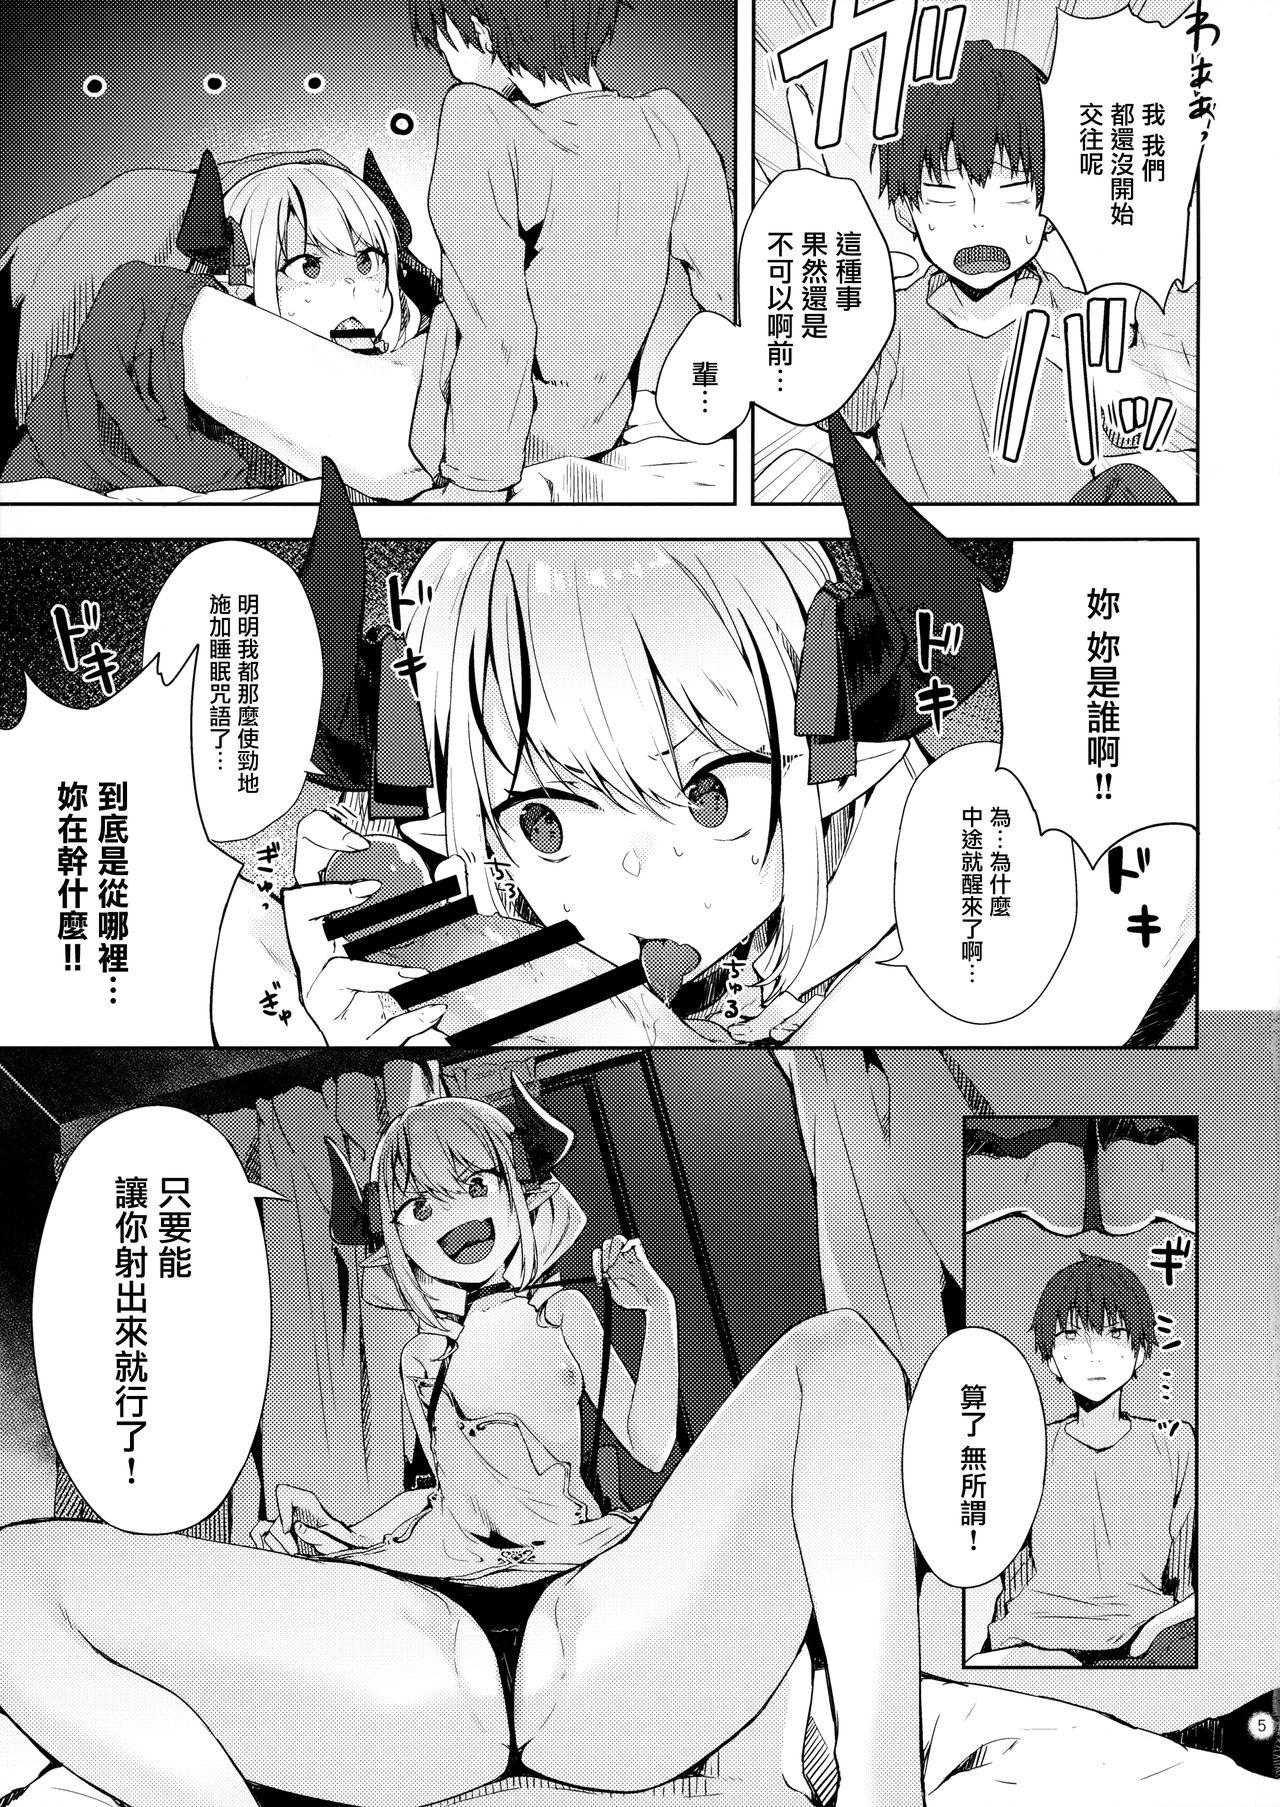 Amature Ecchi na Yume wa Suki desu ka? - Original Spoon - Page 5